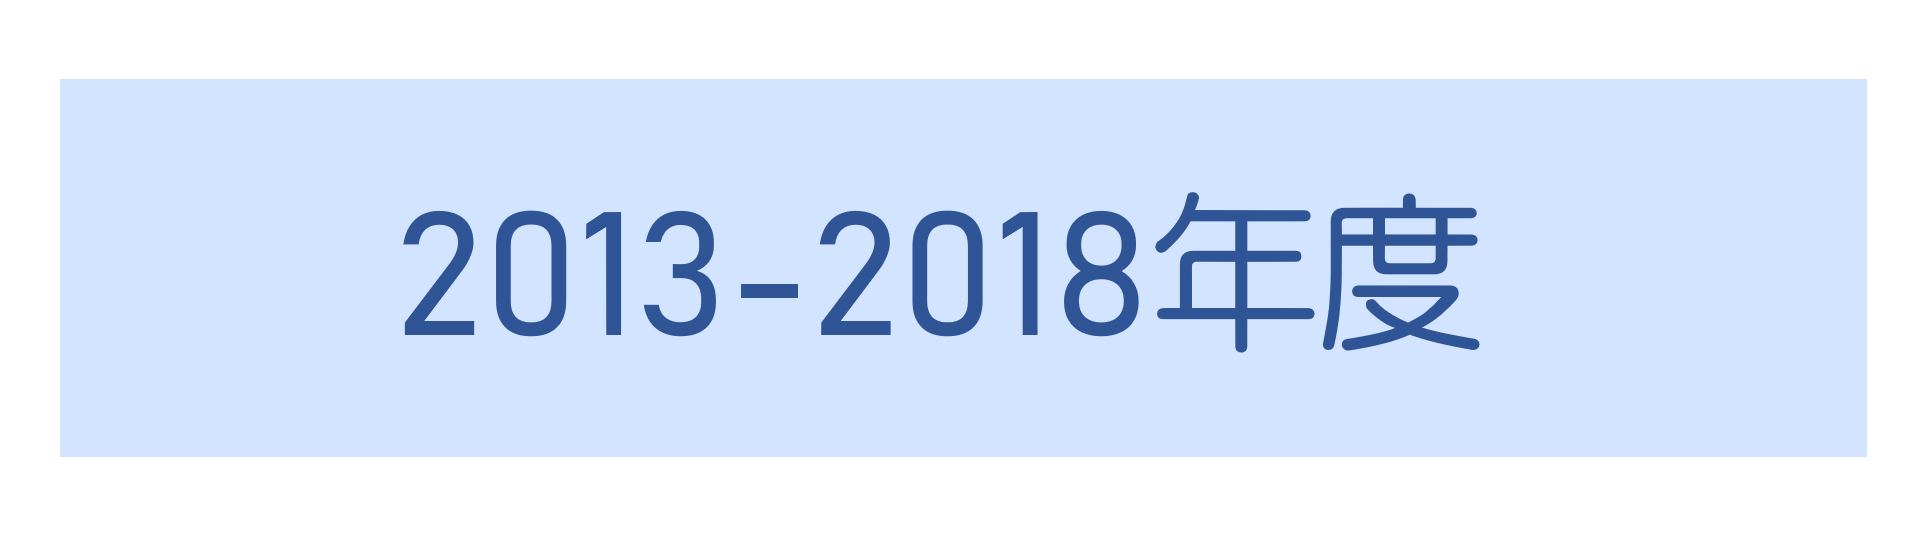 2013-2018年度